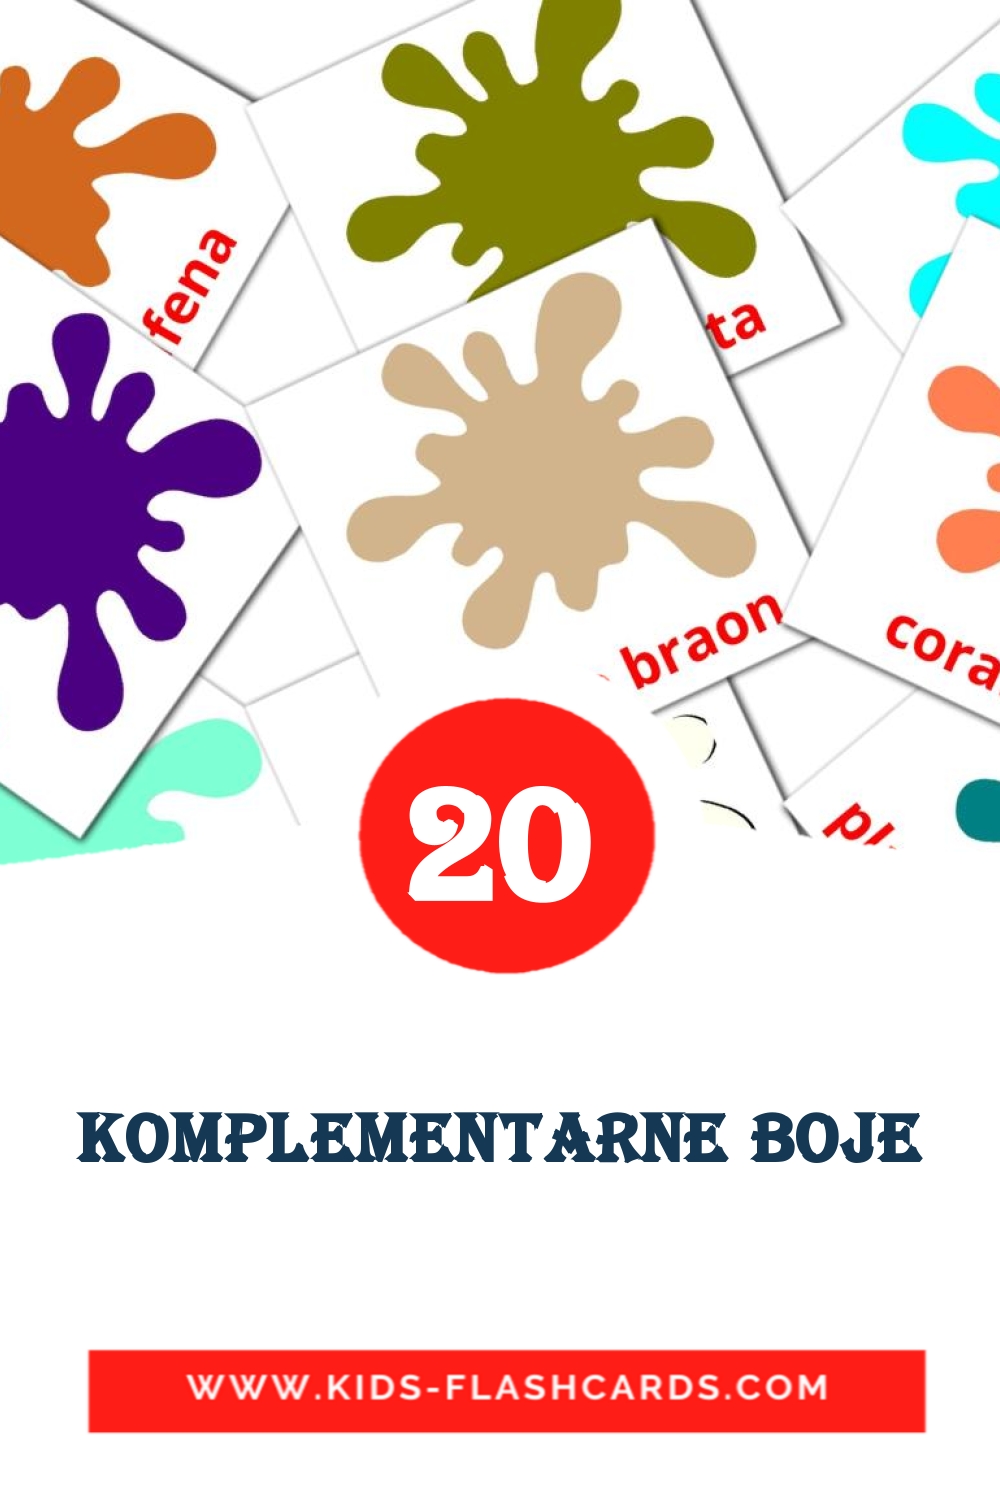 20 Komplementarne boje Bildkarten für den Kindergarten auf Serbisch